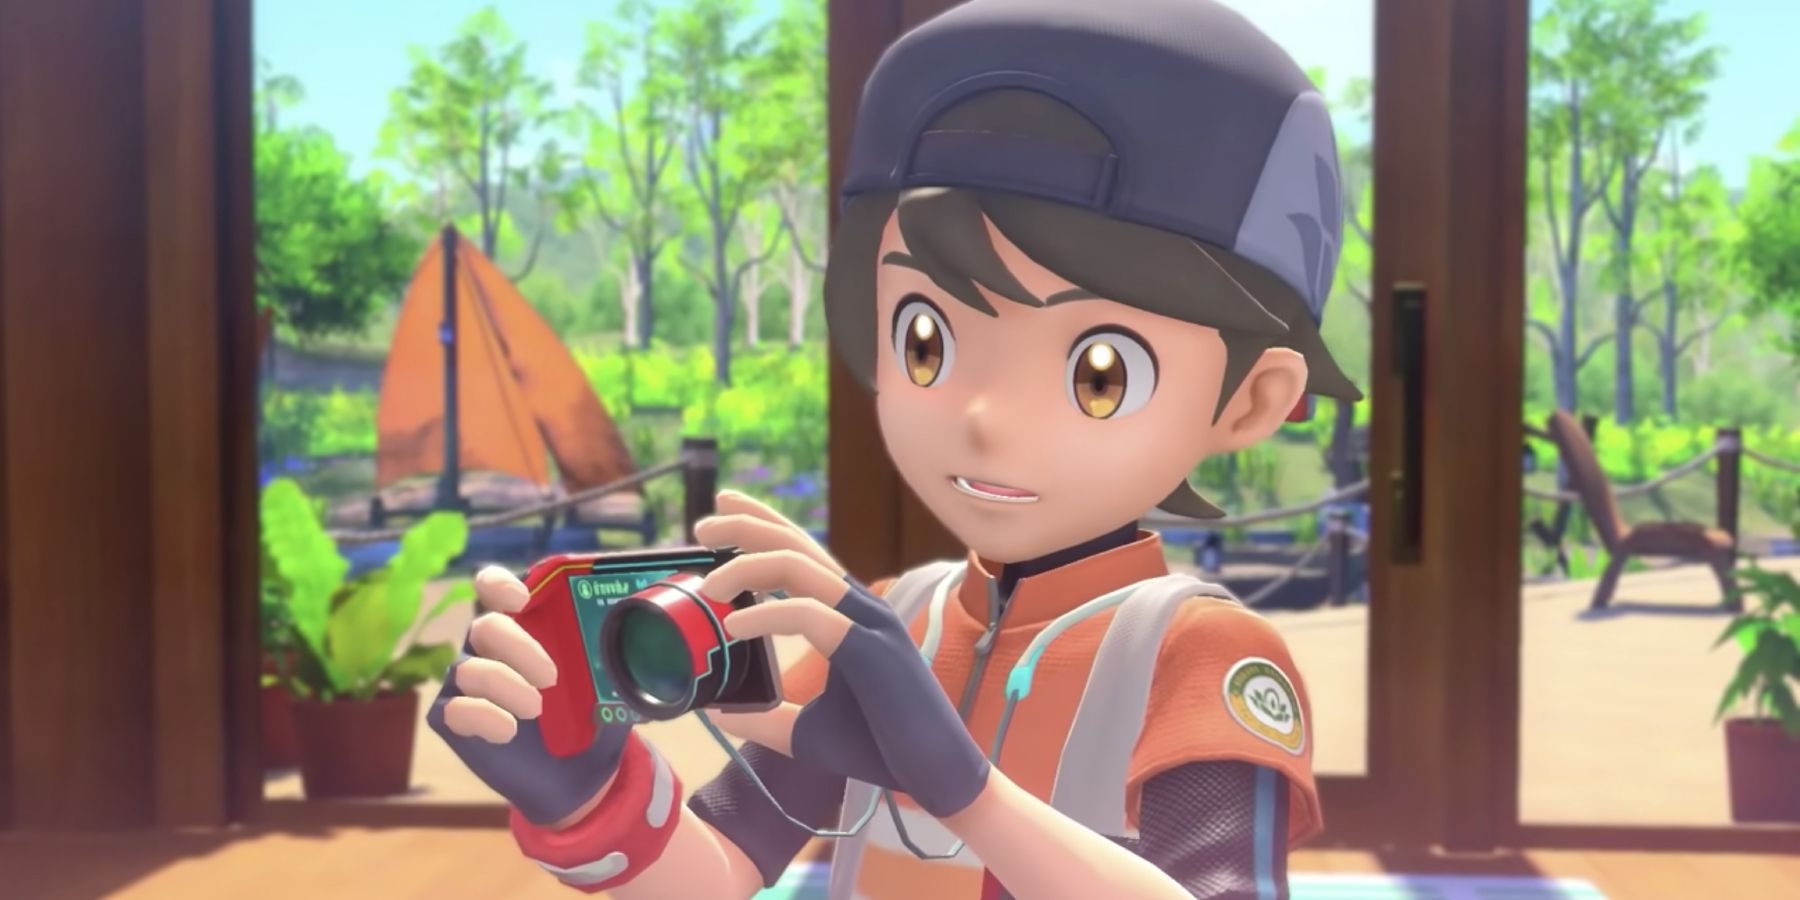 hou-pokemon-snap-camera-controller-9933610